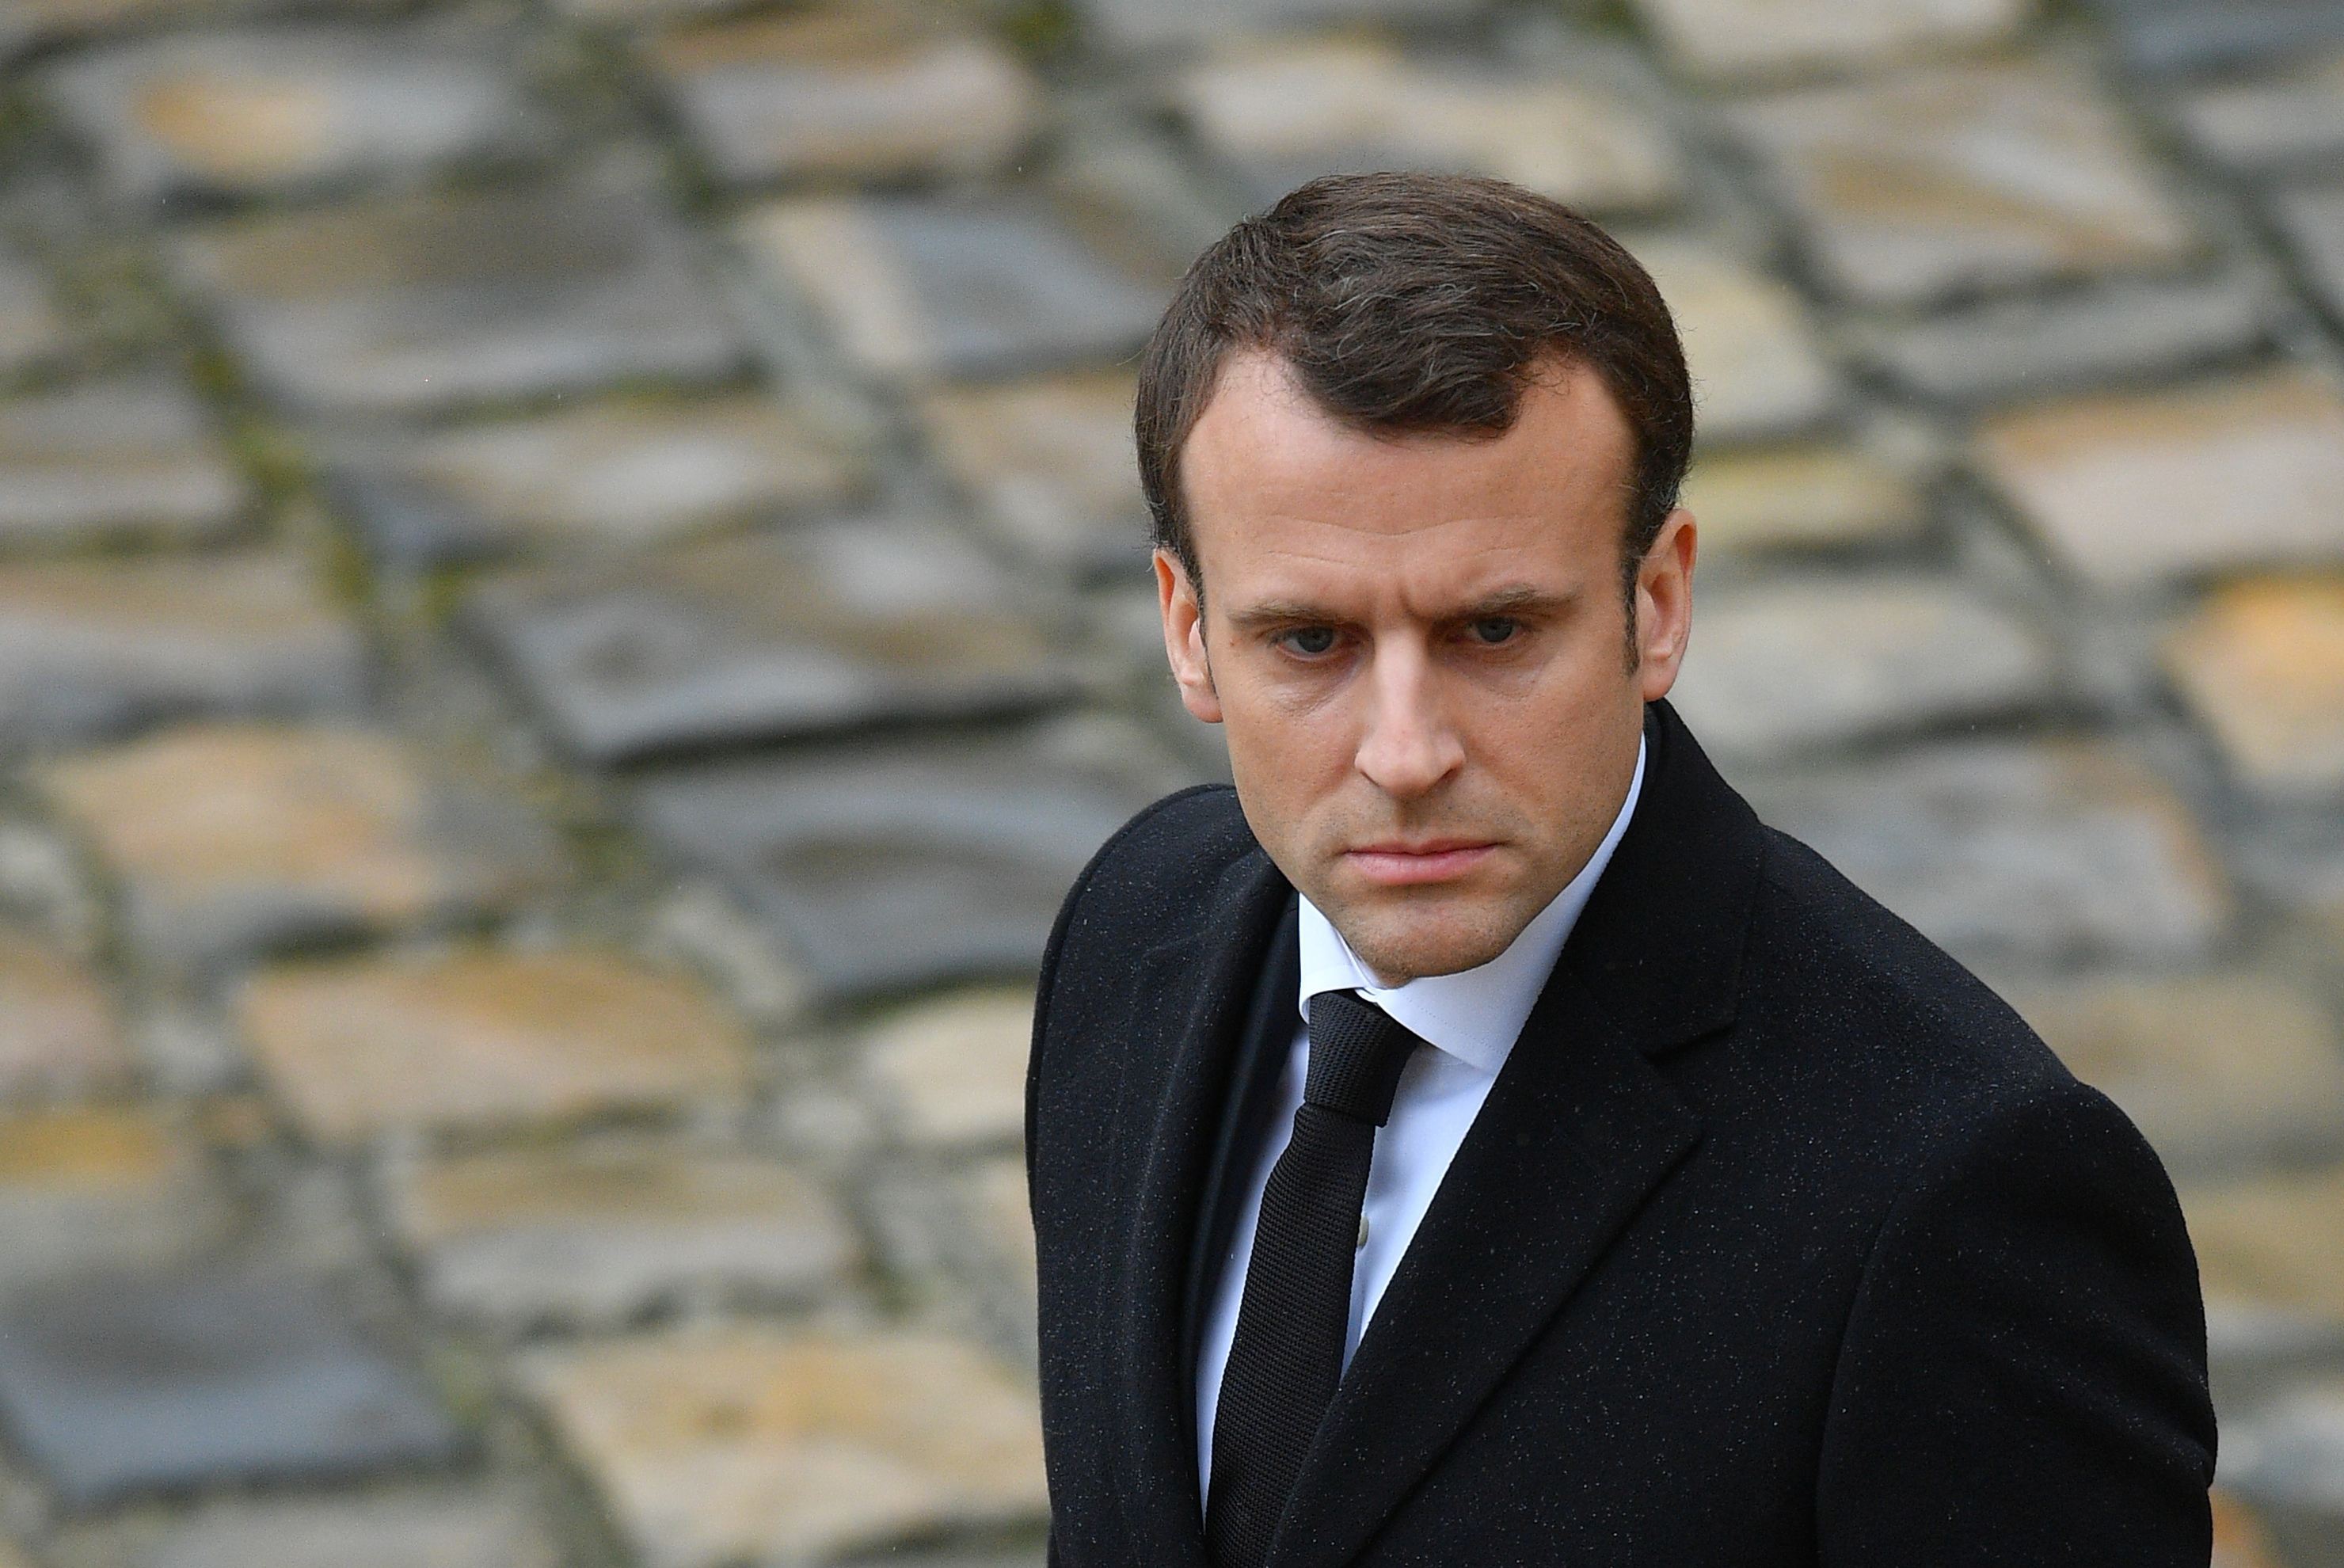 Reforma pensiilor a lui Macron, care a aruncat Franţa în haos, prinde viteză: Consiliul Constituţional din Franţa a validat principalele elemente ale planului 